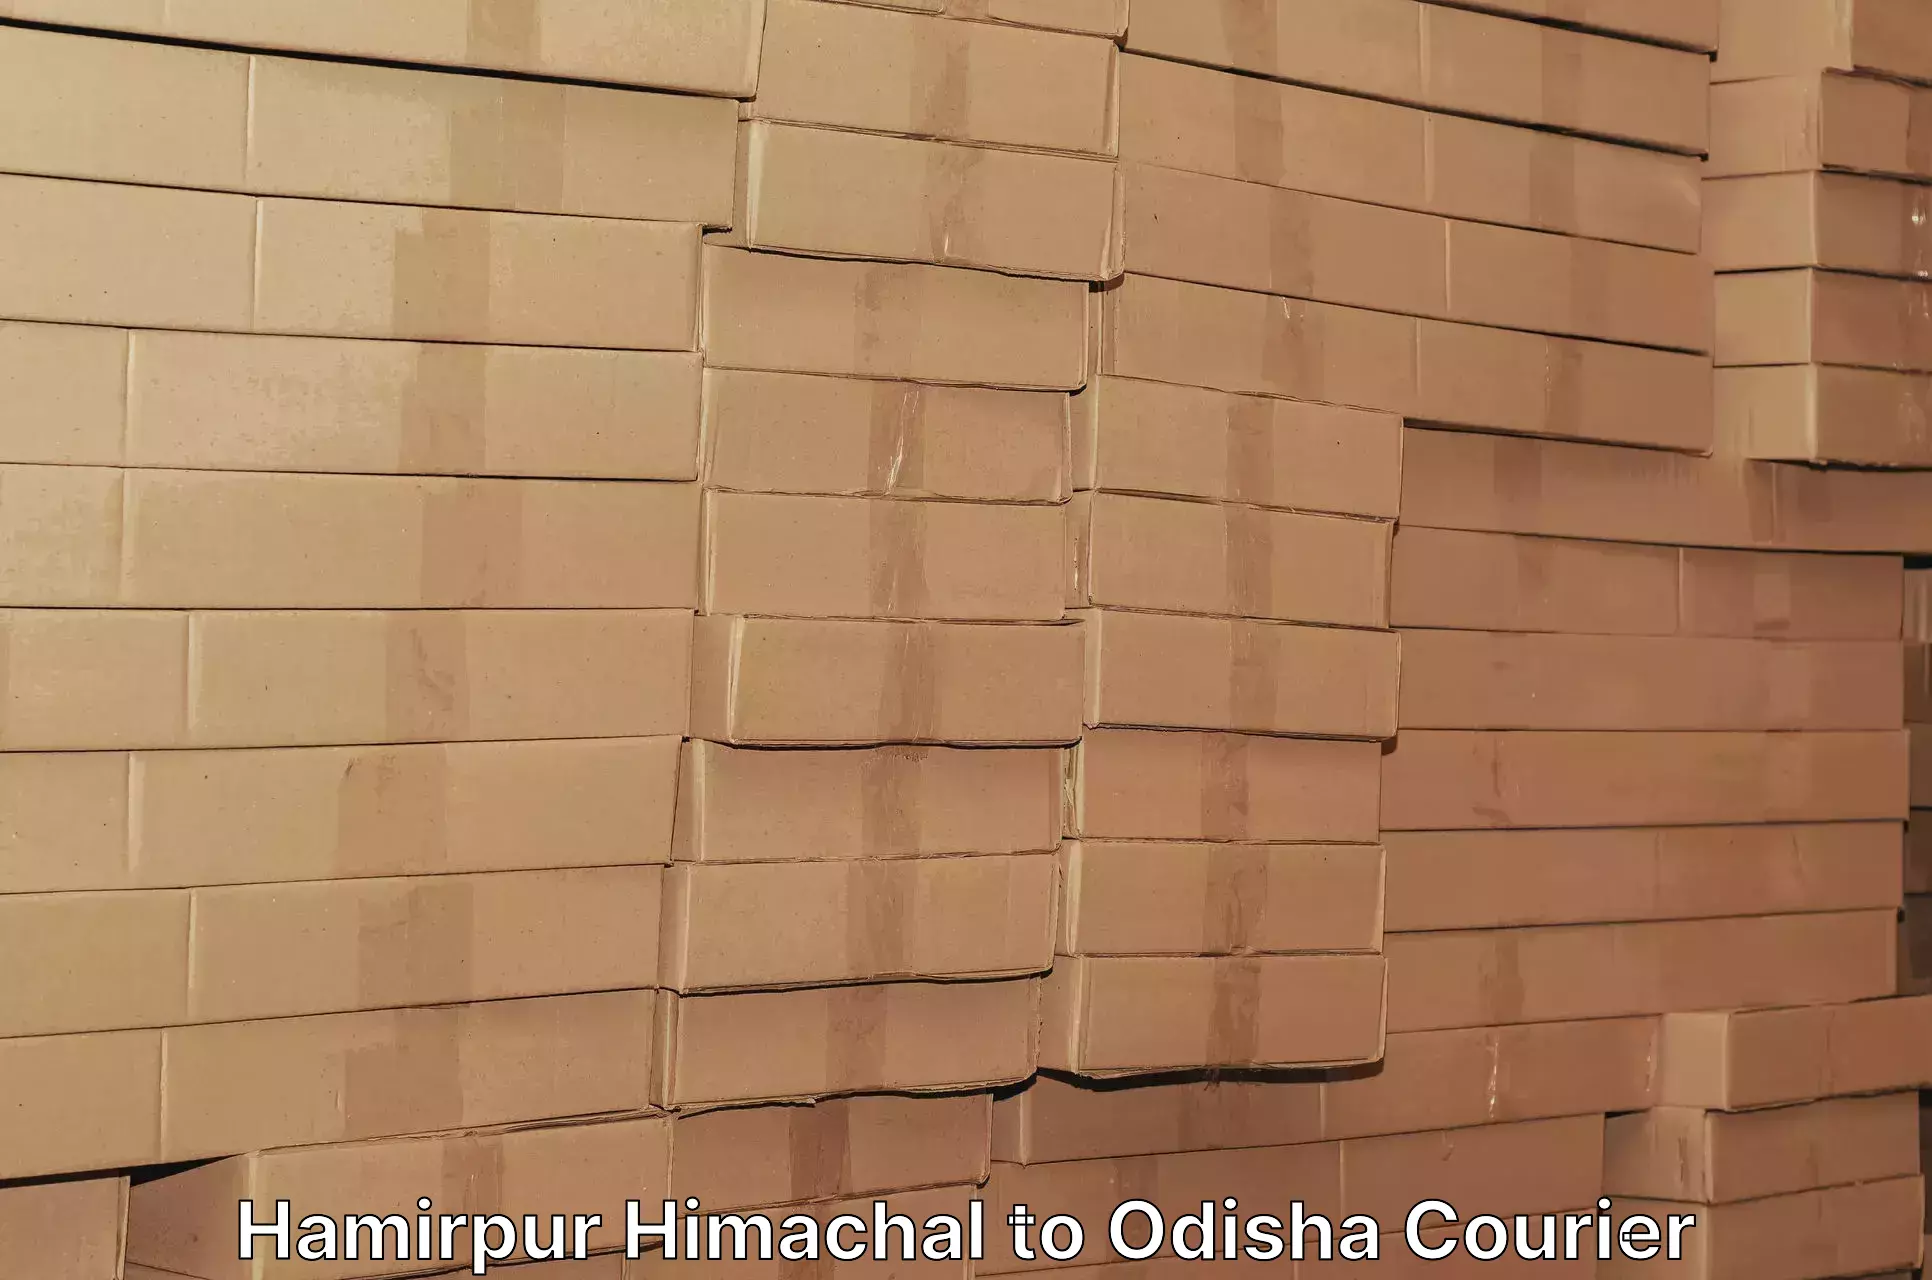 Door-to-door freight service Hamirpur Himachal to Basta